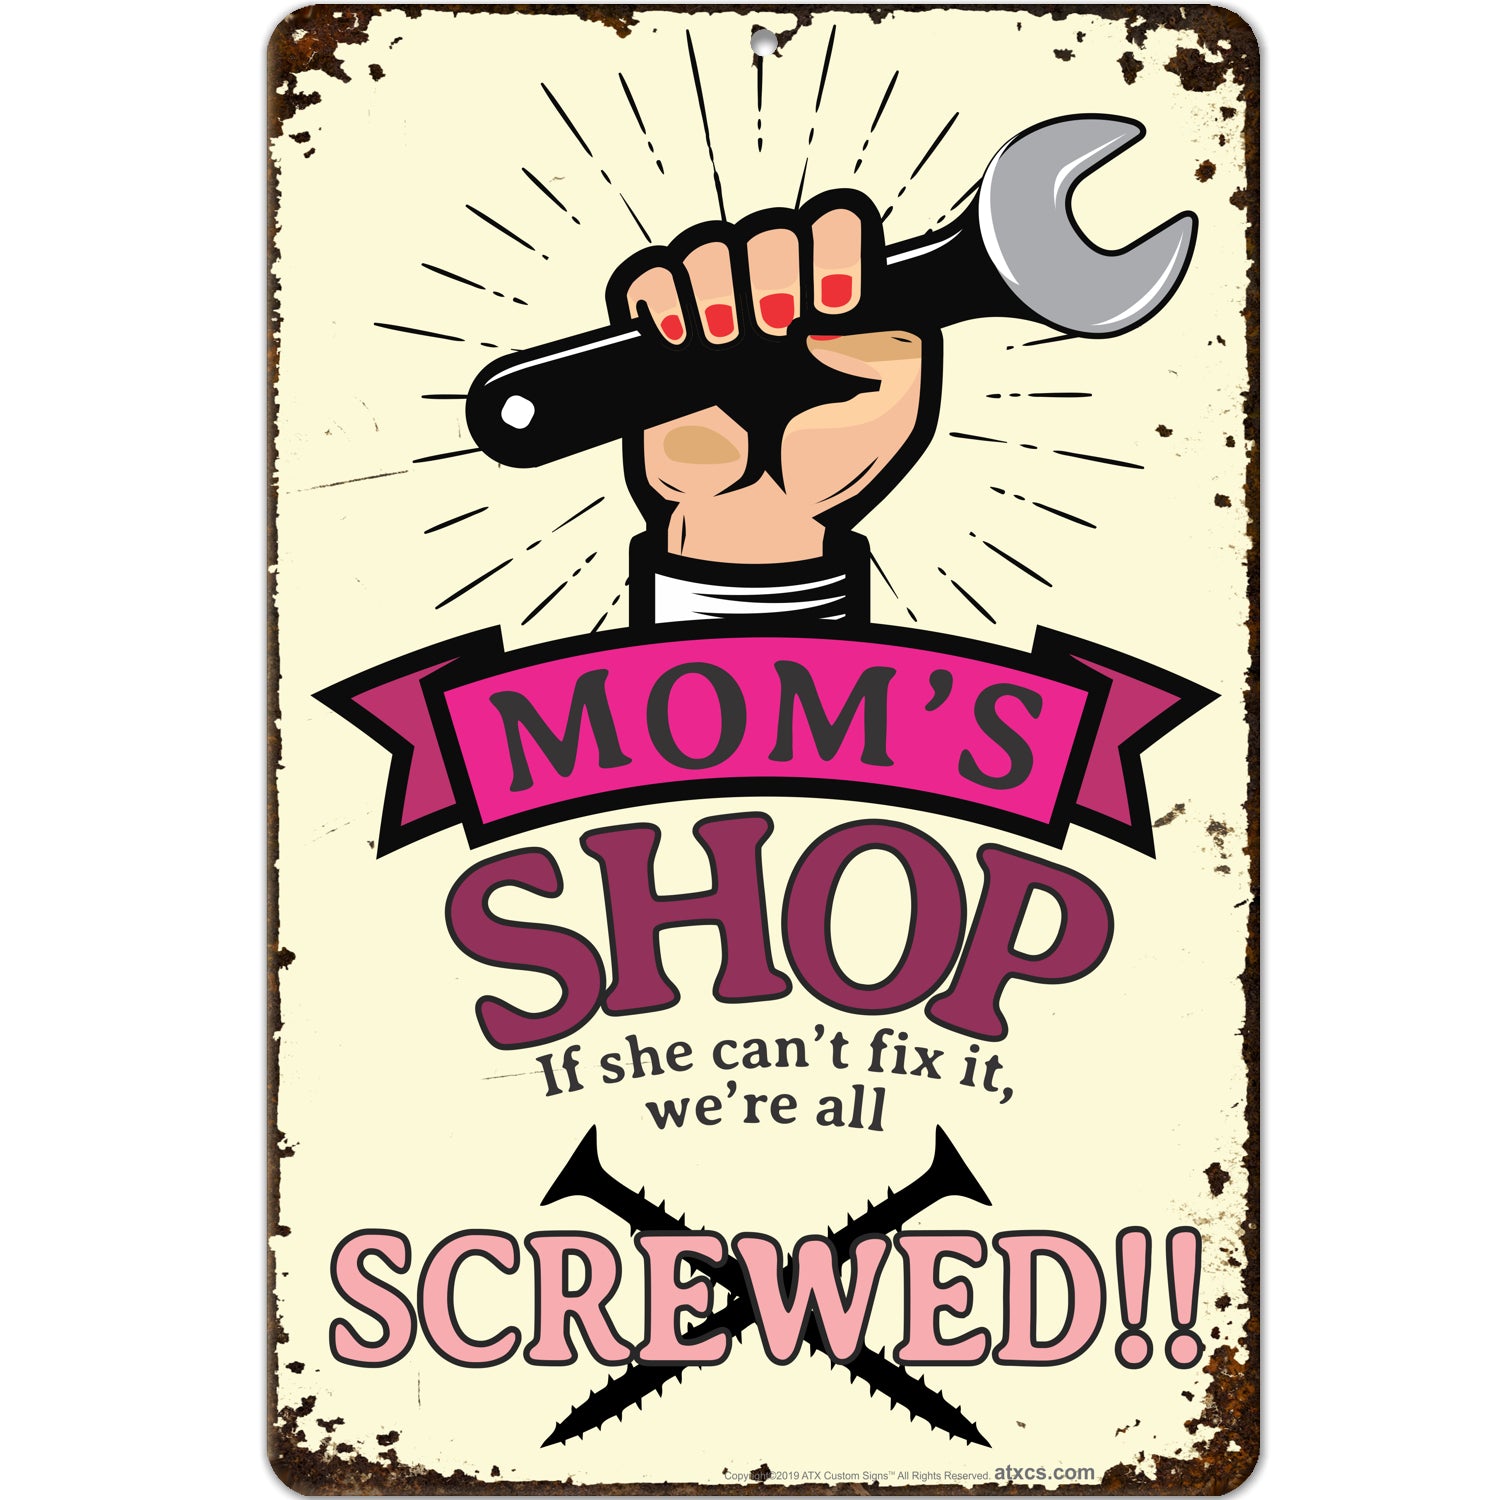 Moms Shop